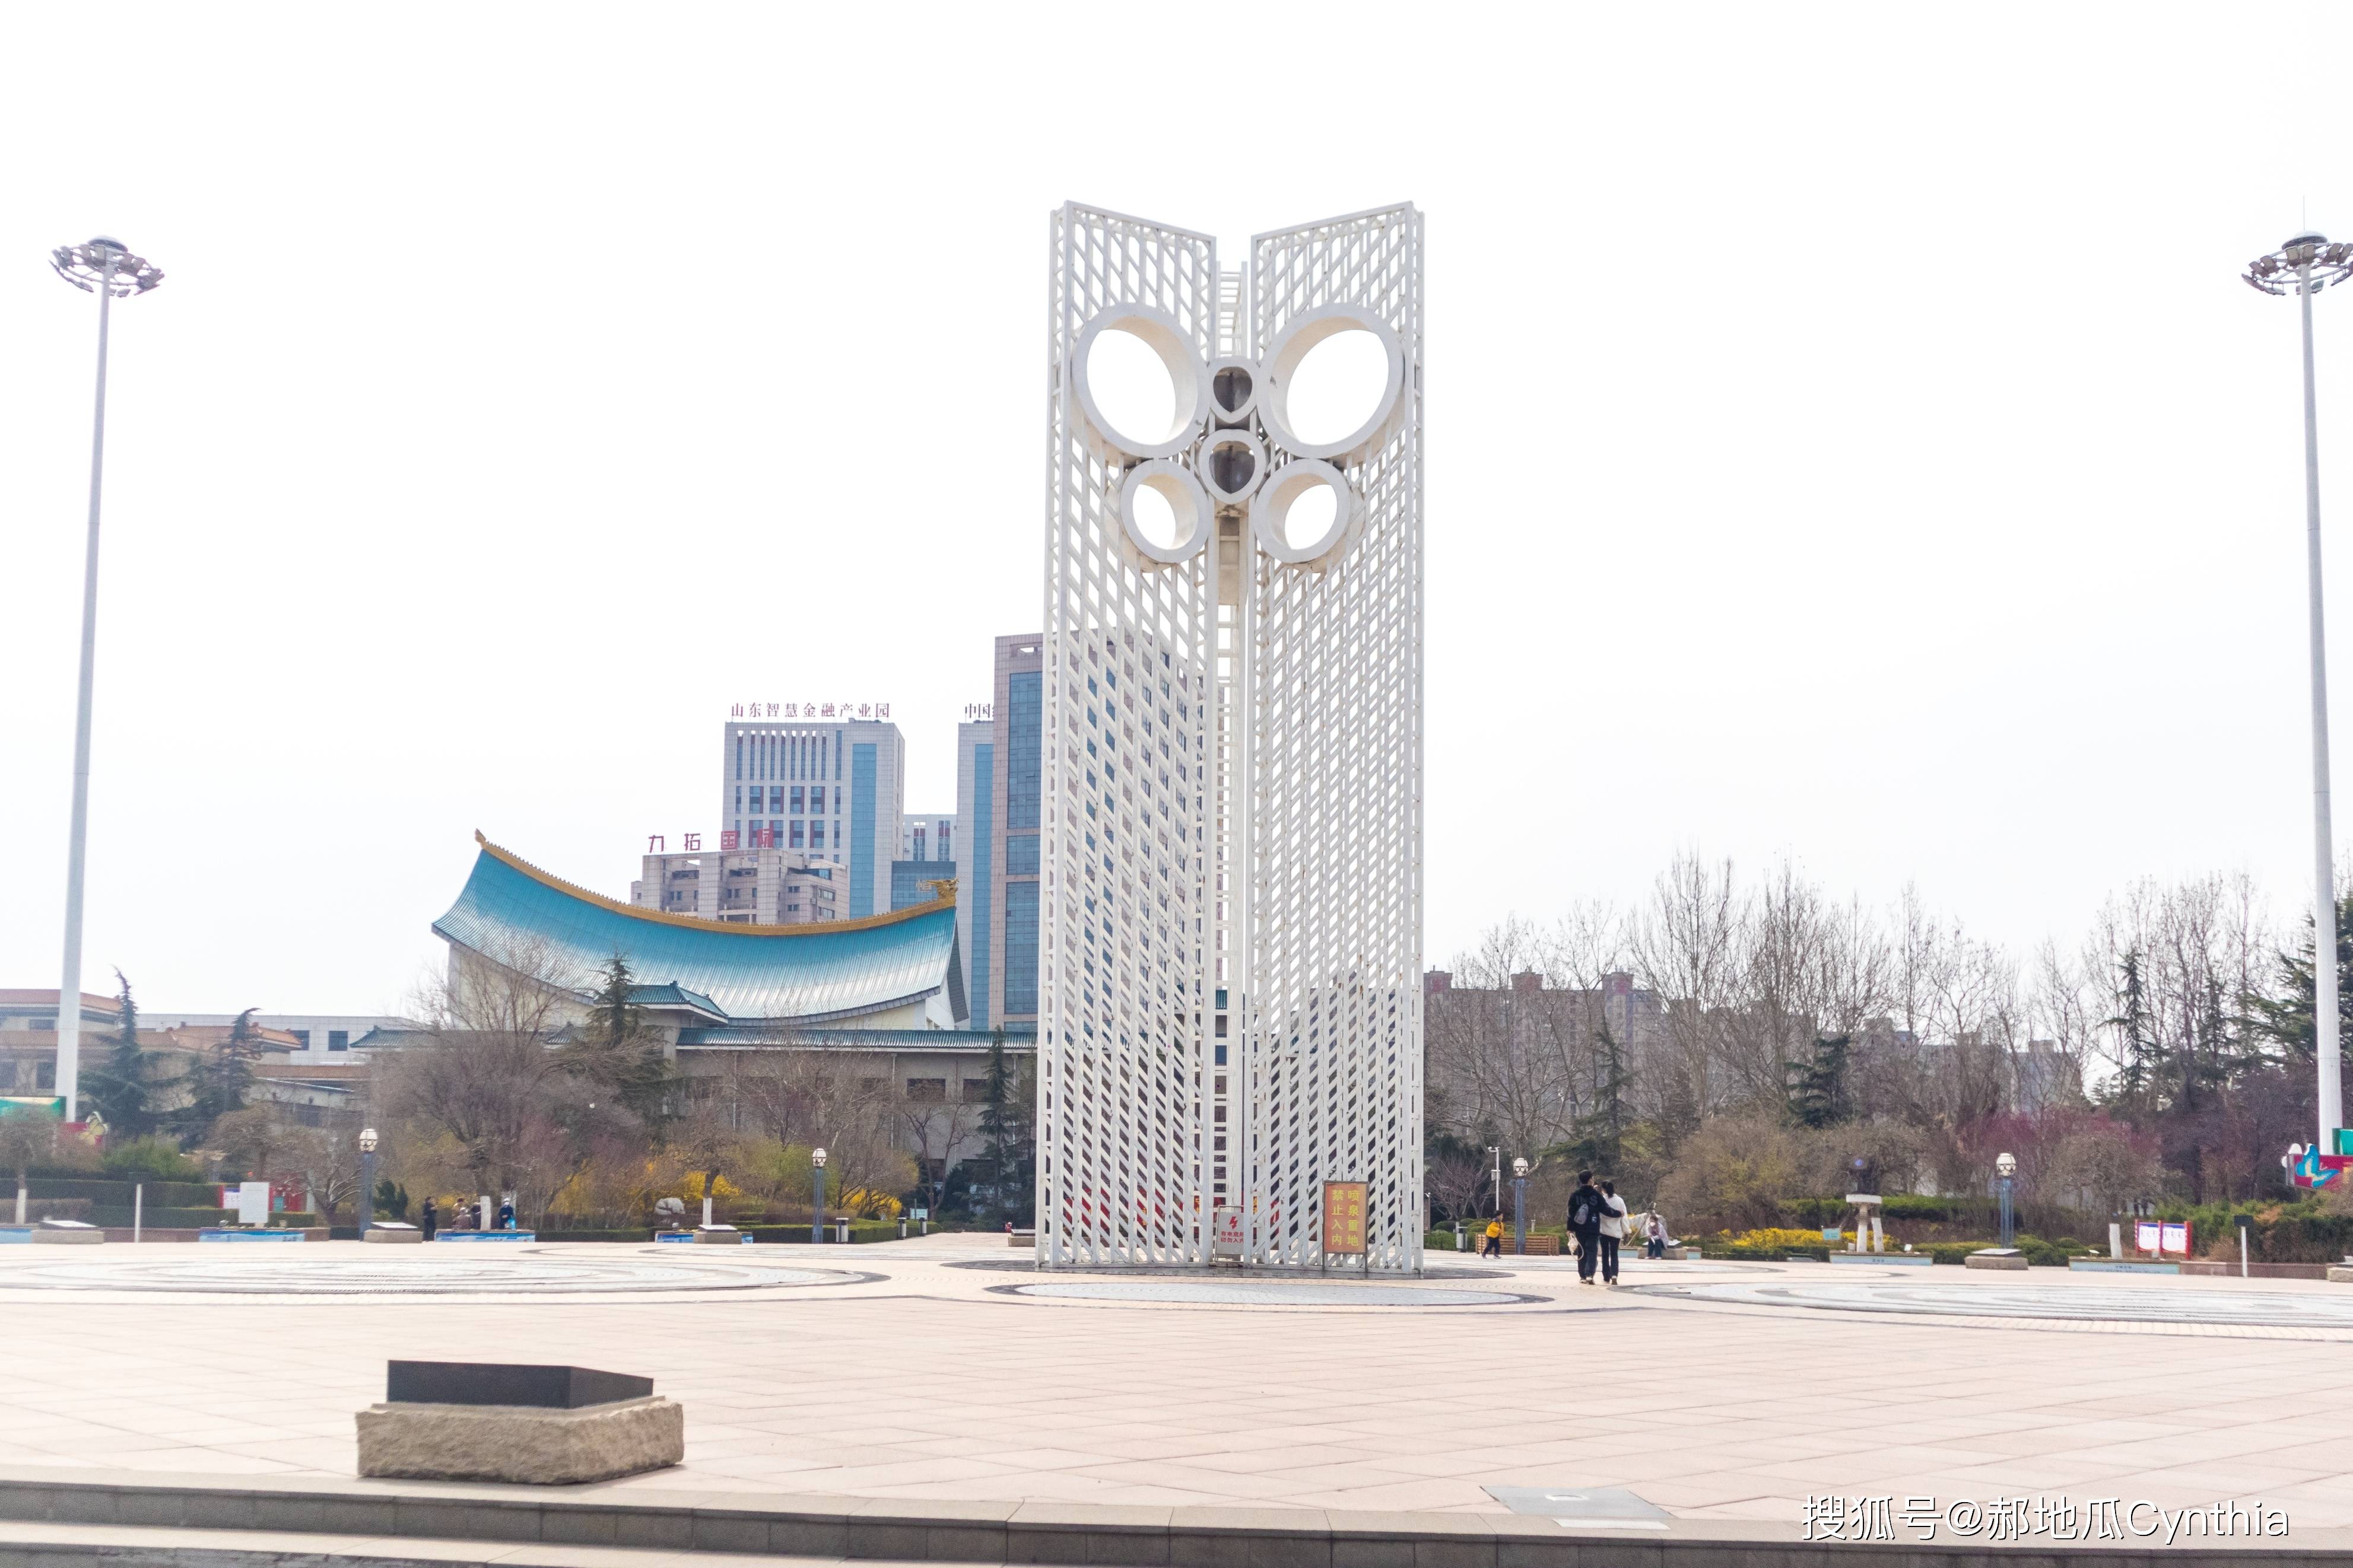 逛完博物馆来到他前面的风筝广场,这是潍坊市的一处地标,也是象征